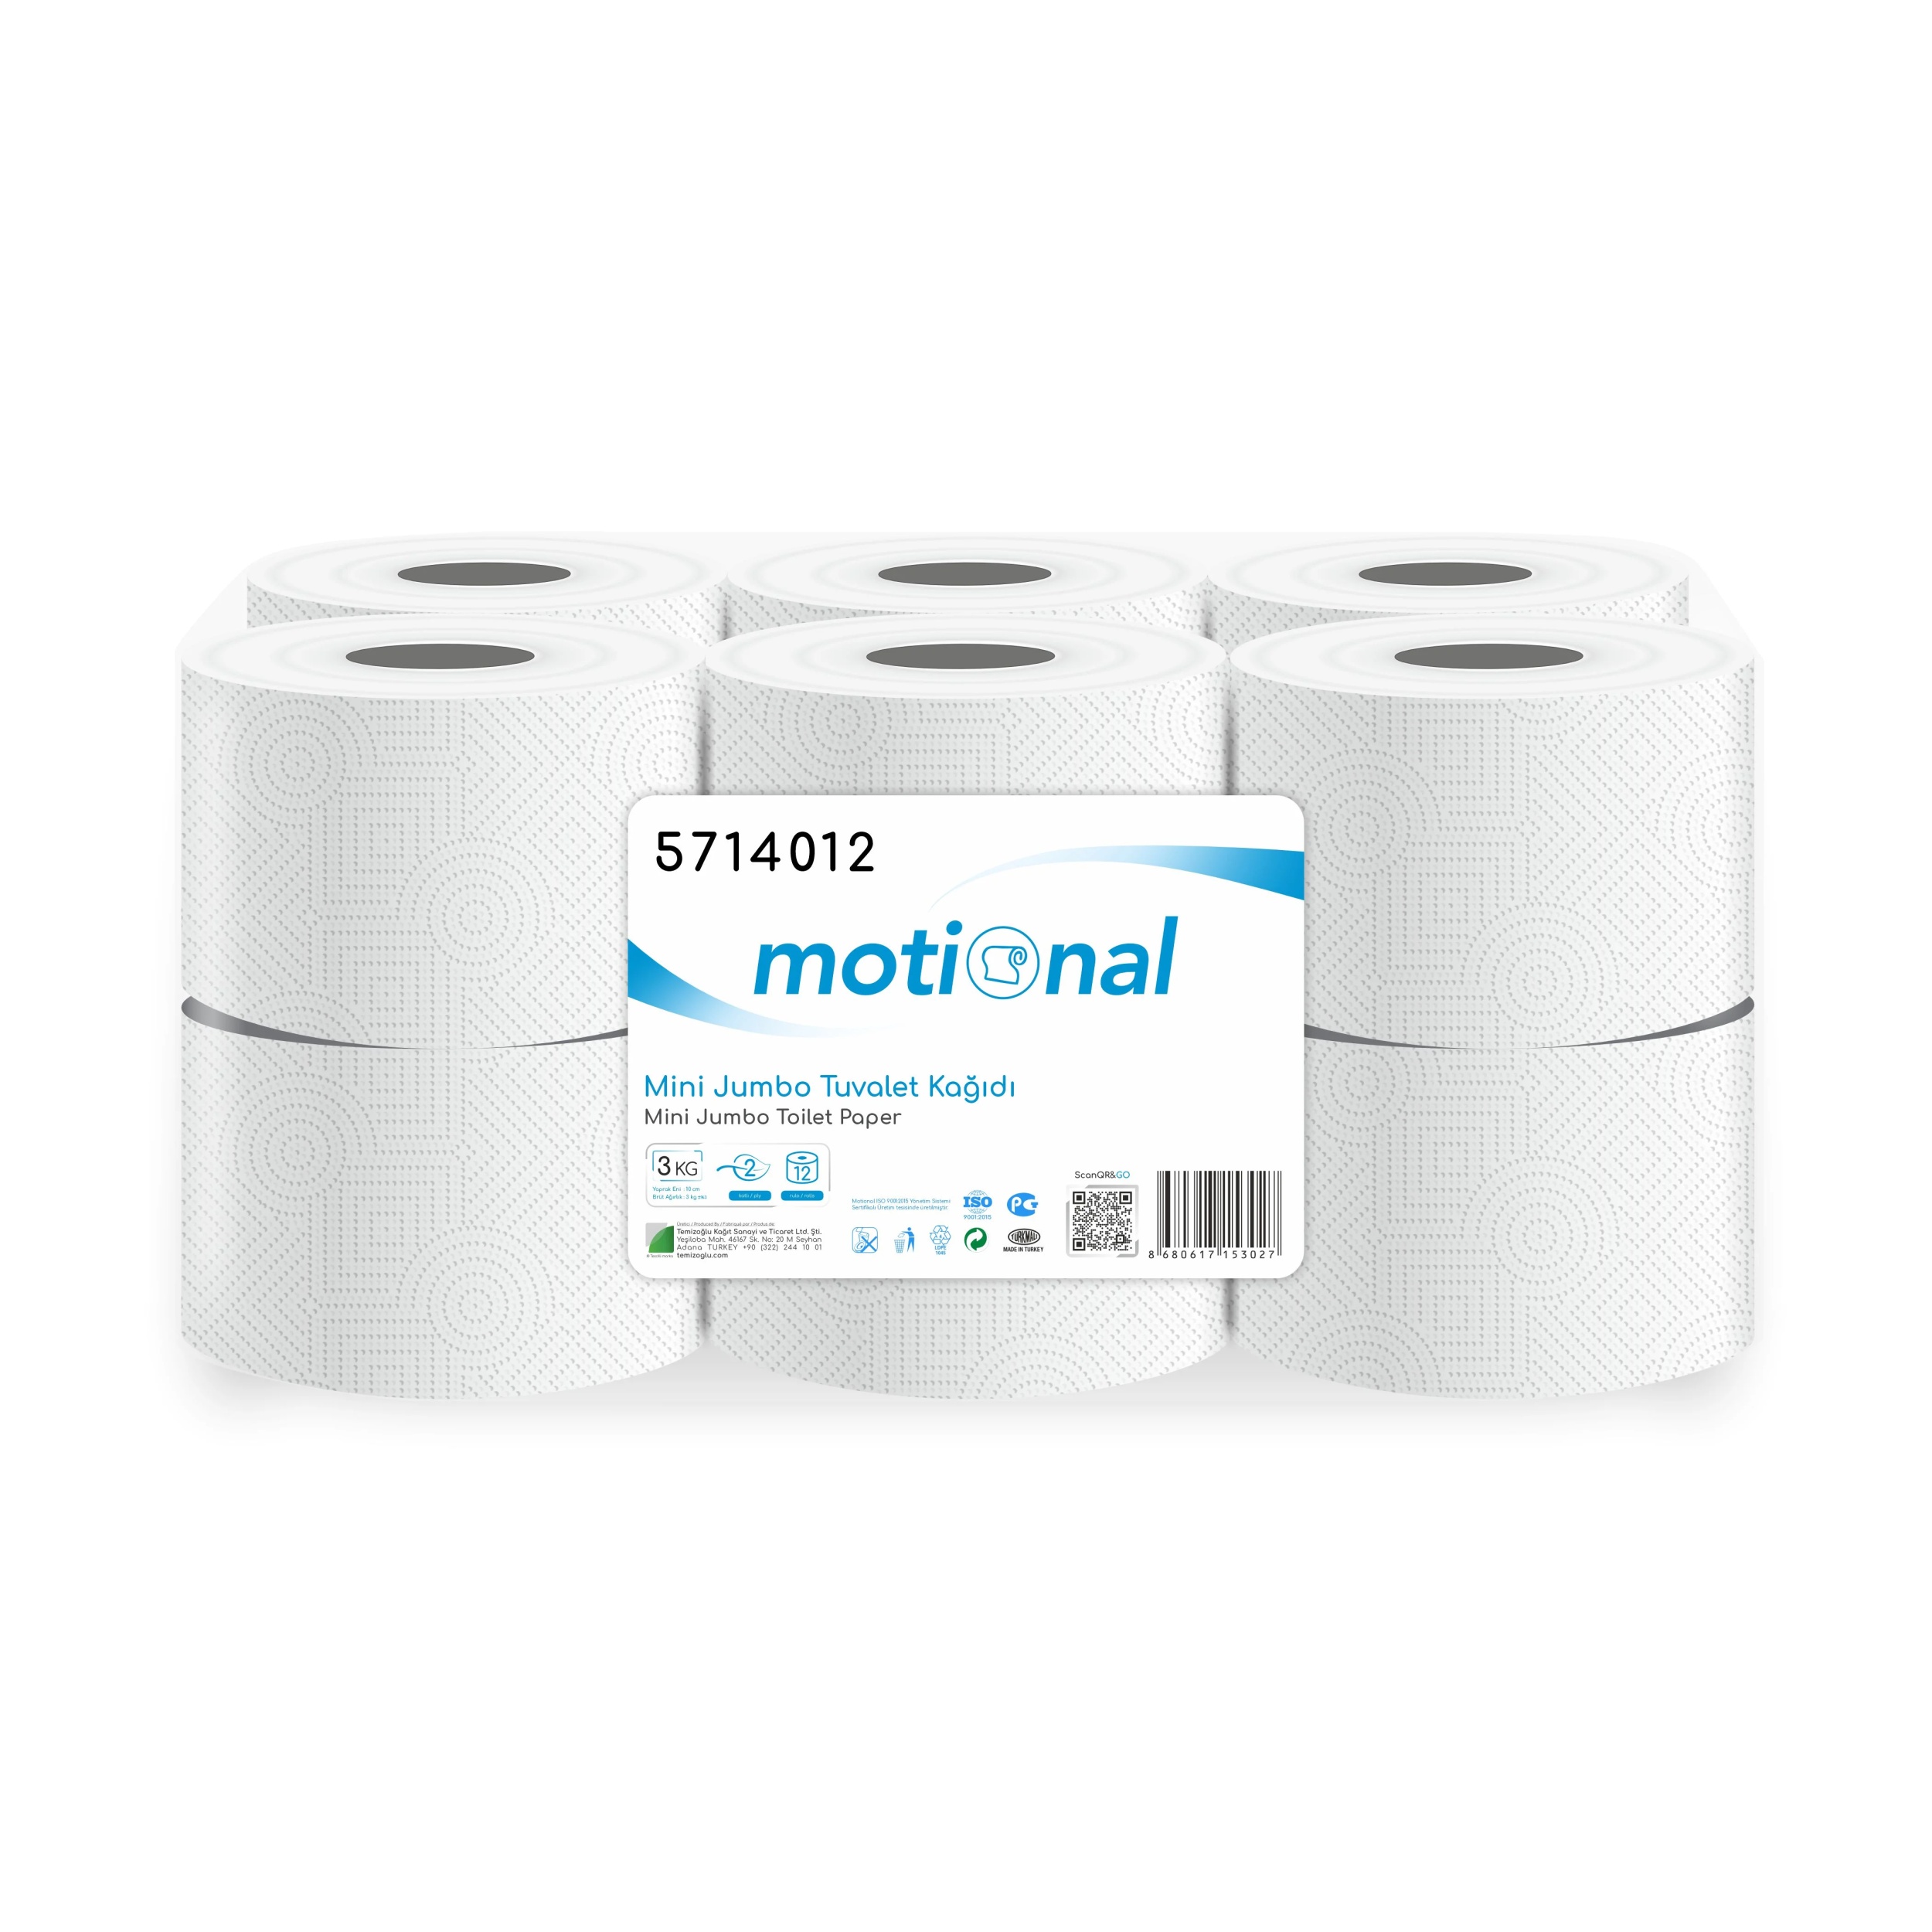 Motional Mini Jumbo Toilet Paper